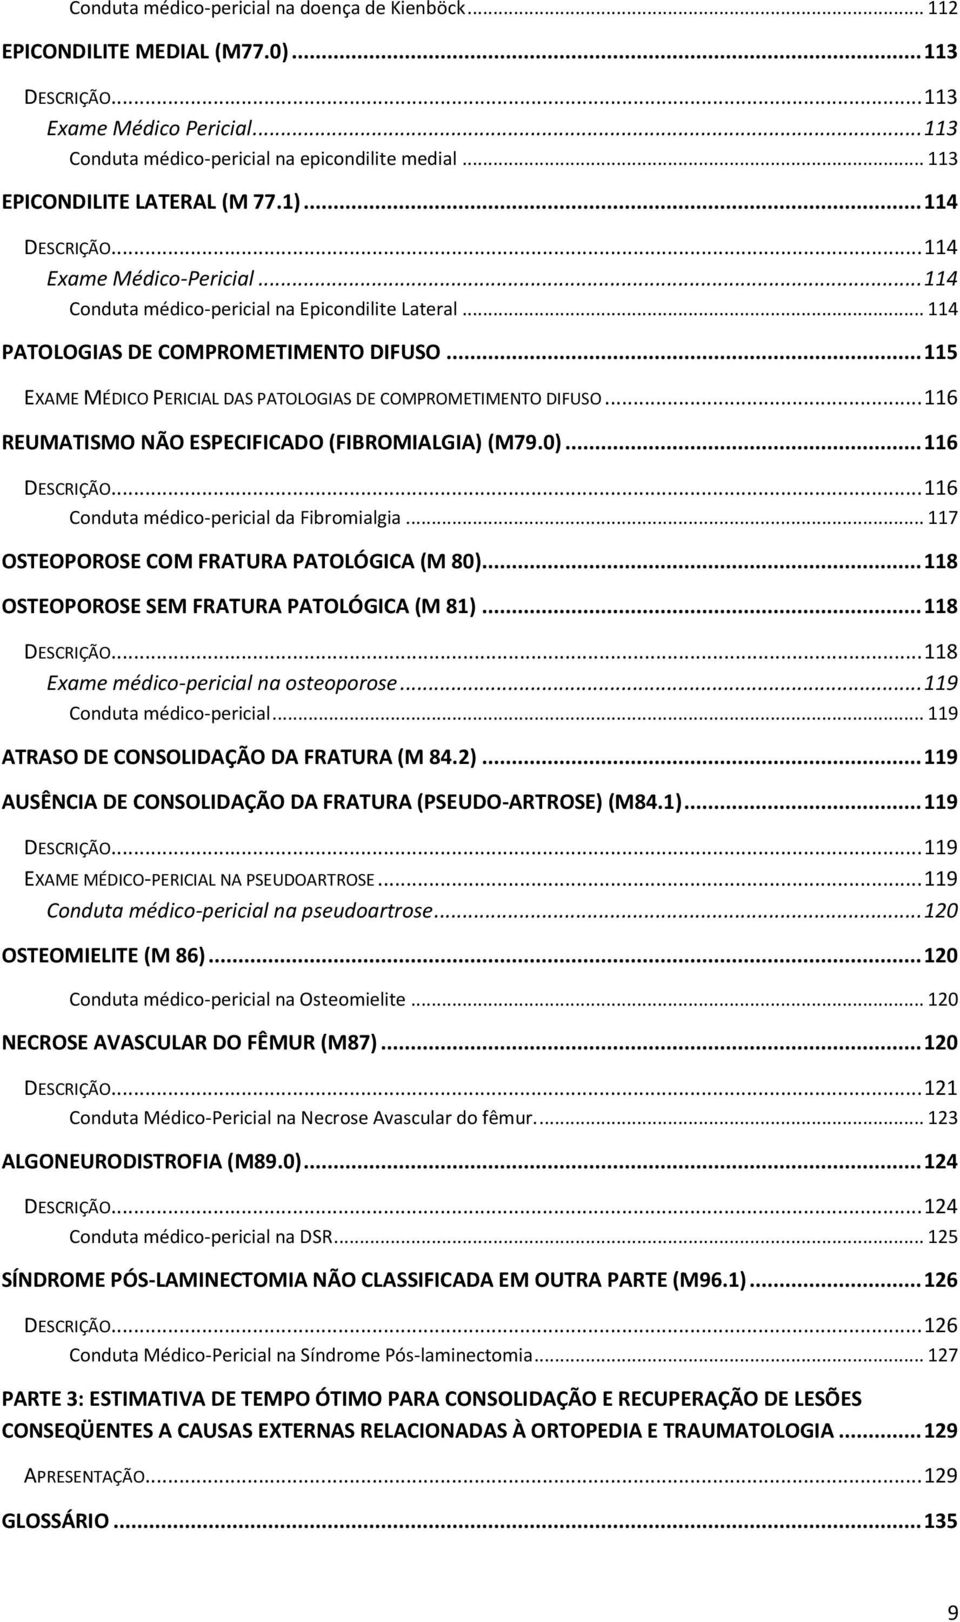 .. 115 EXAME MÉDICO PERICIAL DAS PATOLOGIAS DE COMPROMETIMENTO DIFUSO... 116 REUMATISMO NÃO ESPECIFICADO (FIBROMIALGIA) (M79.0)... 116 DESCRIÇÃO... 116 Conduta médico-pericial da Fibromialgia.